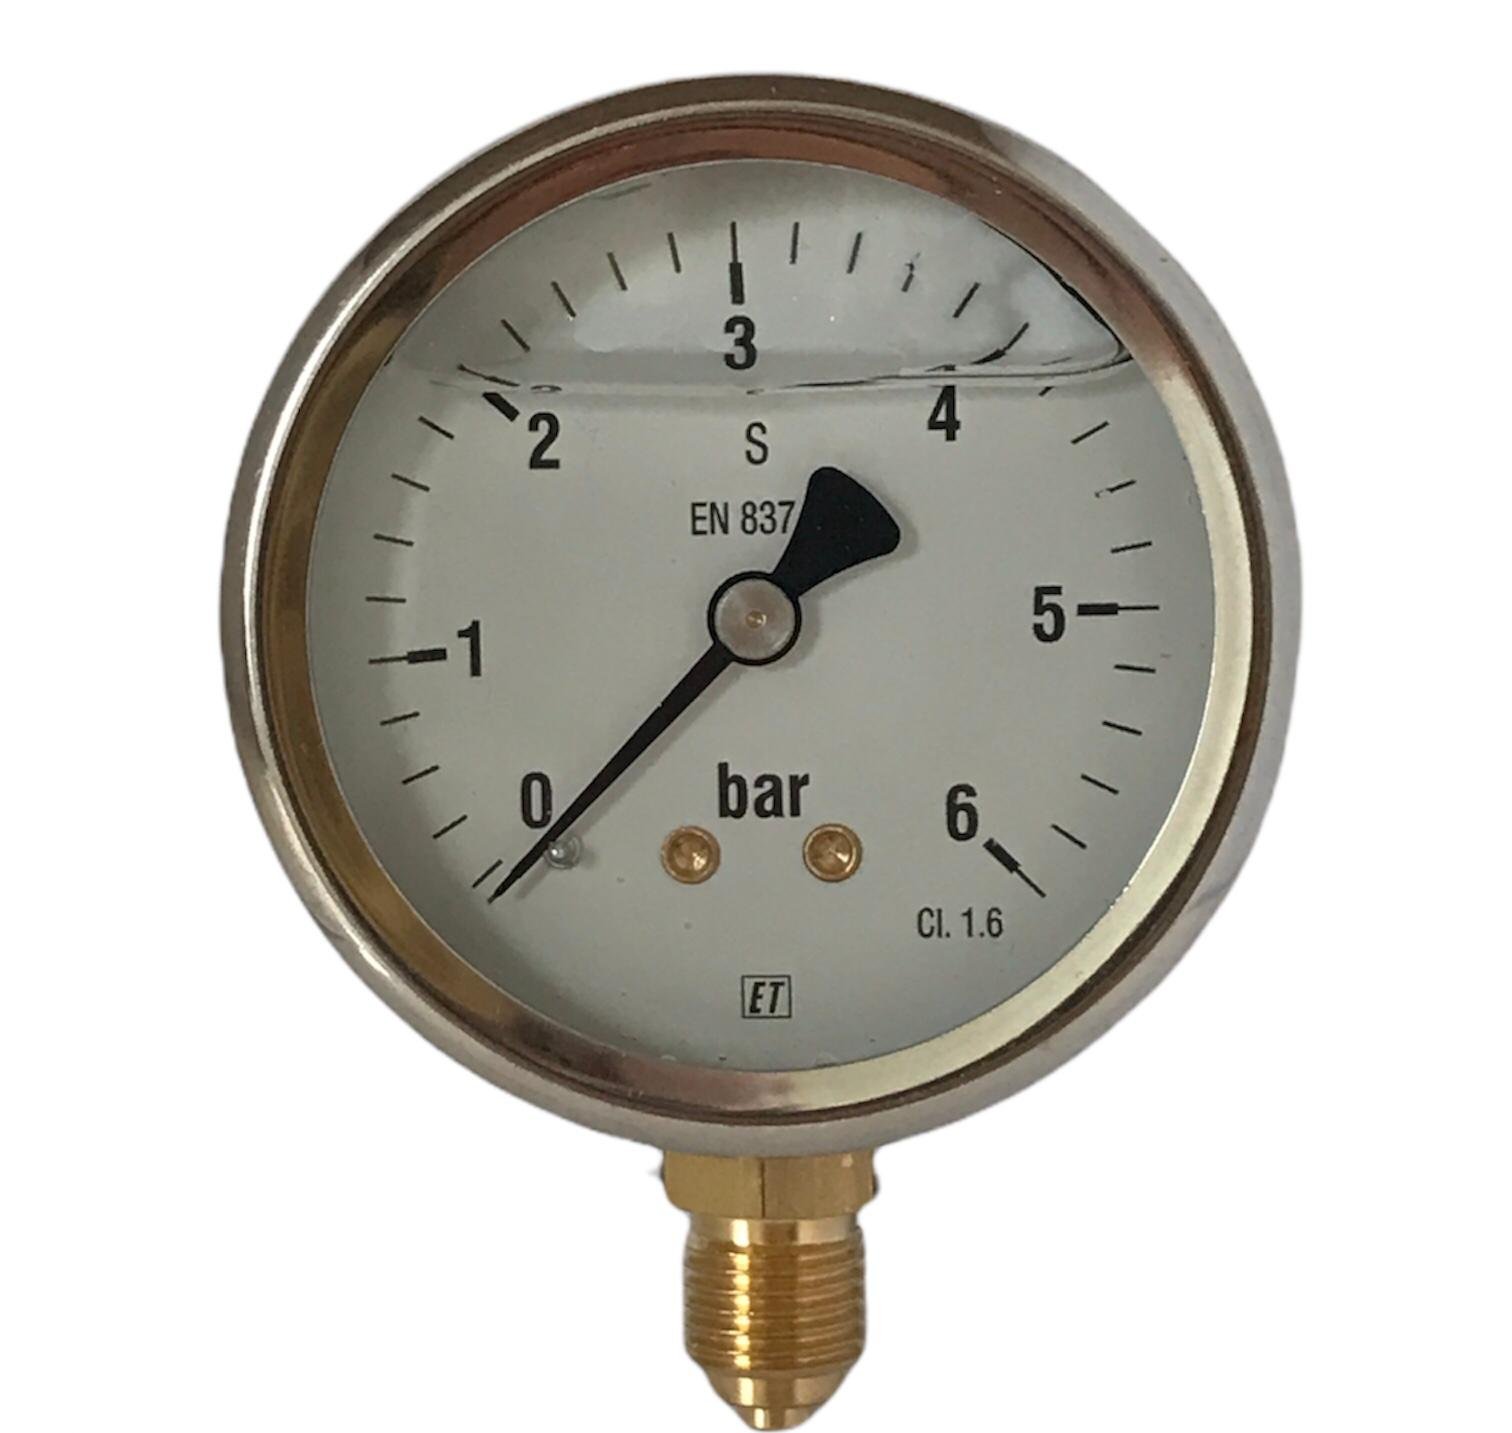 Buisveermanometer met onderaansluiting (glycerinevulling) 0 - 6 bar
38.4054

Webshop » Beregening » Pompen toebehoren